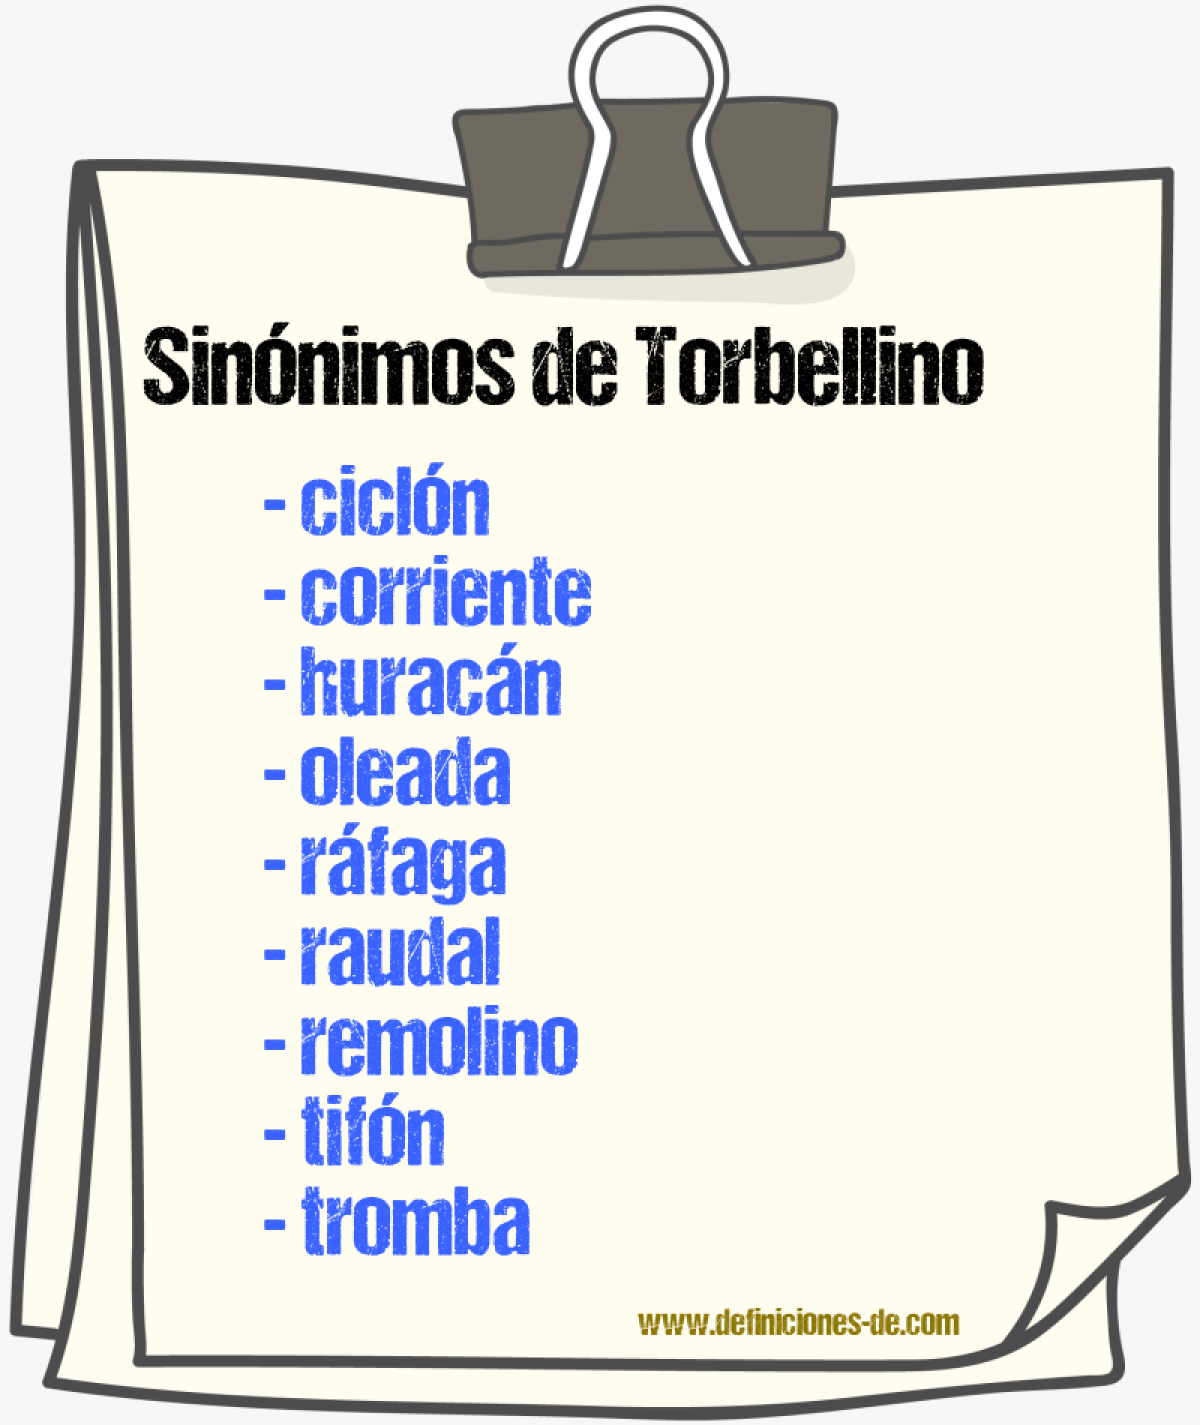 Sinónimos de torbellino